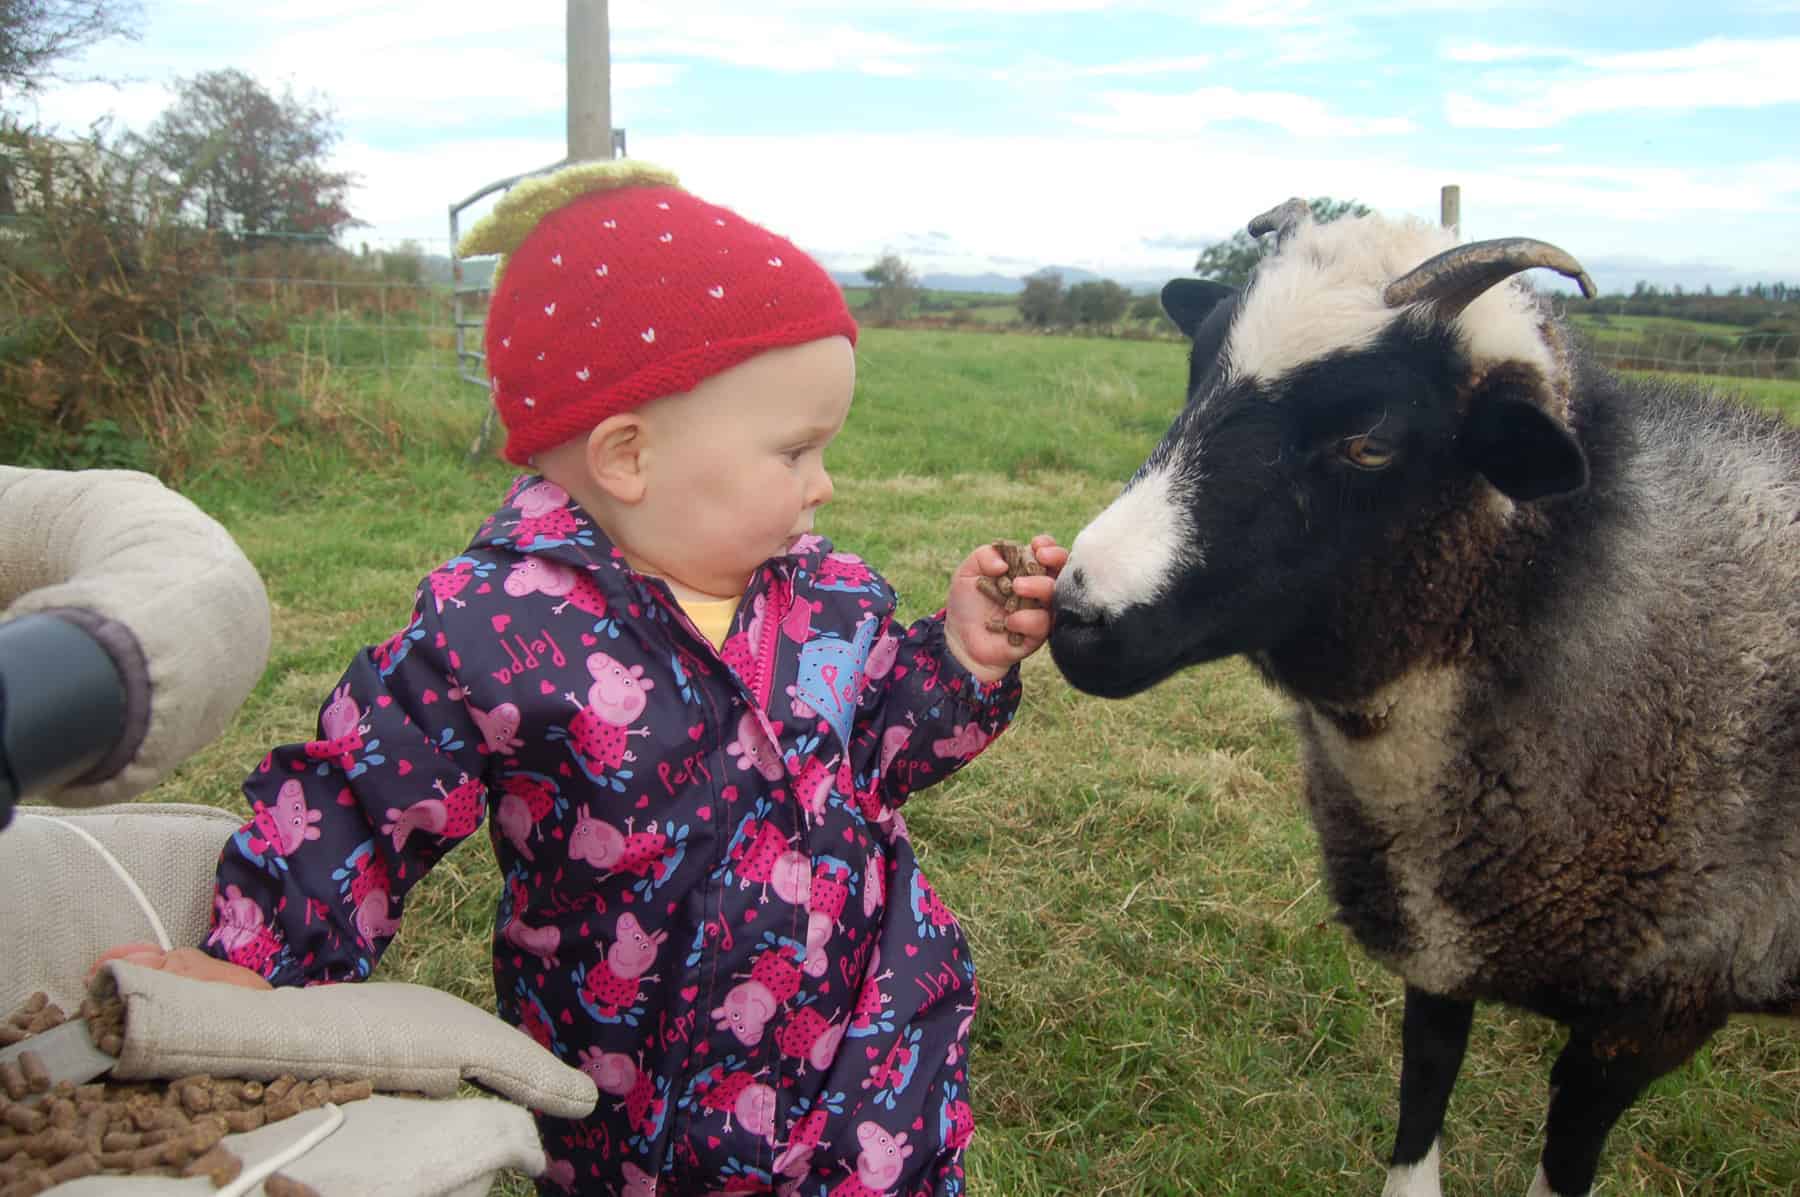 Holly pet lamb sheep jacob cross shetland spotted black grey white wales gwynedd kids farm life 2